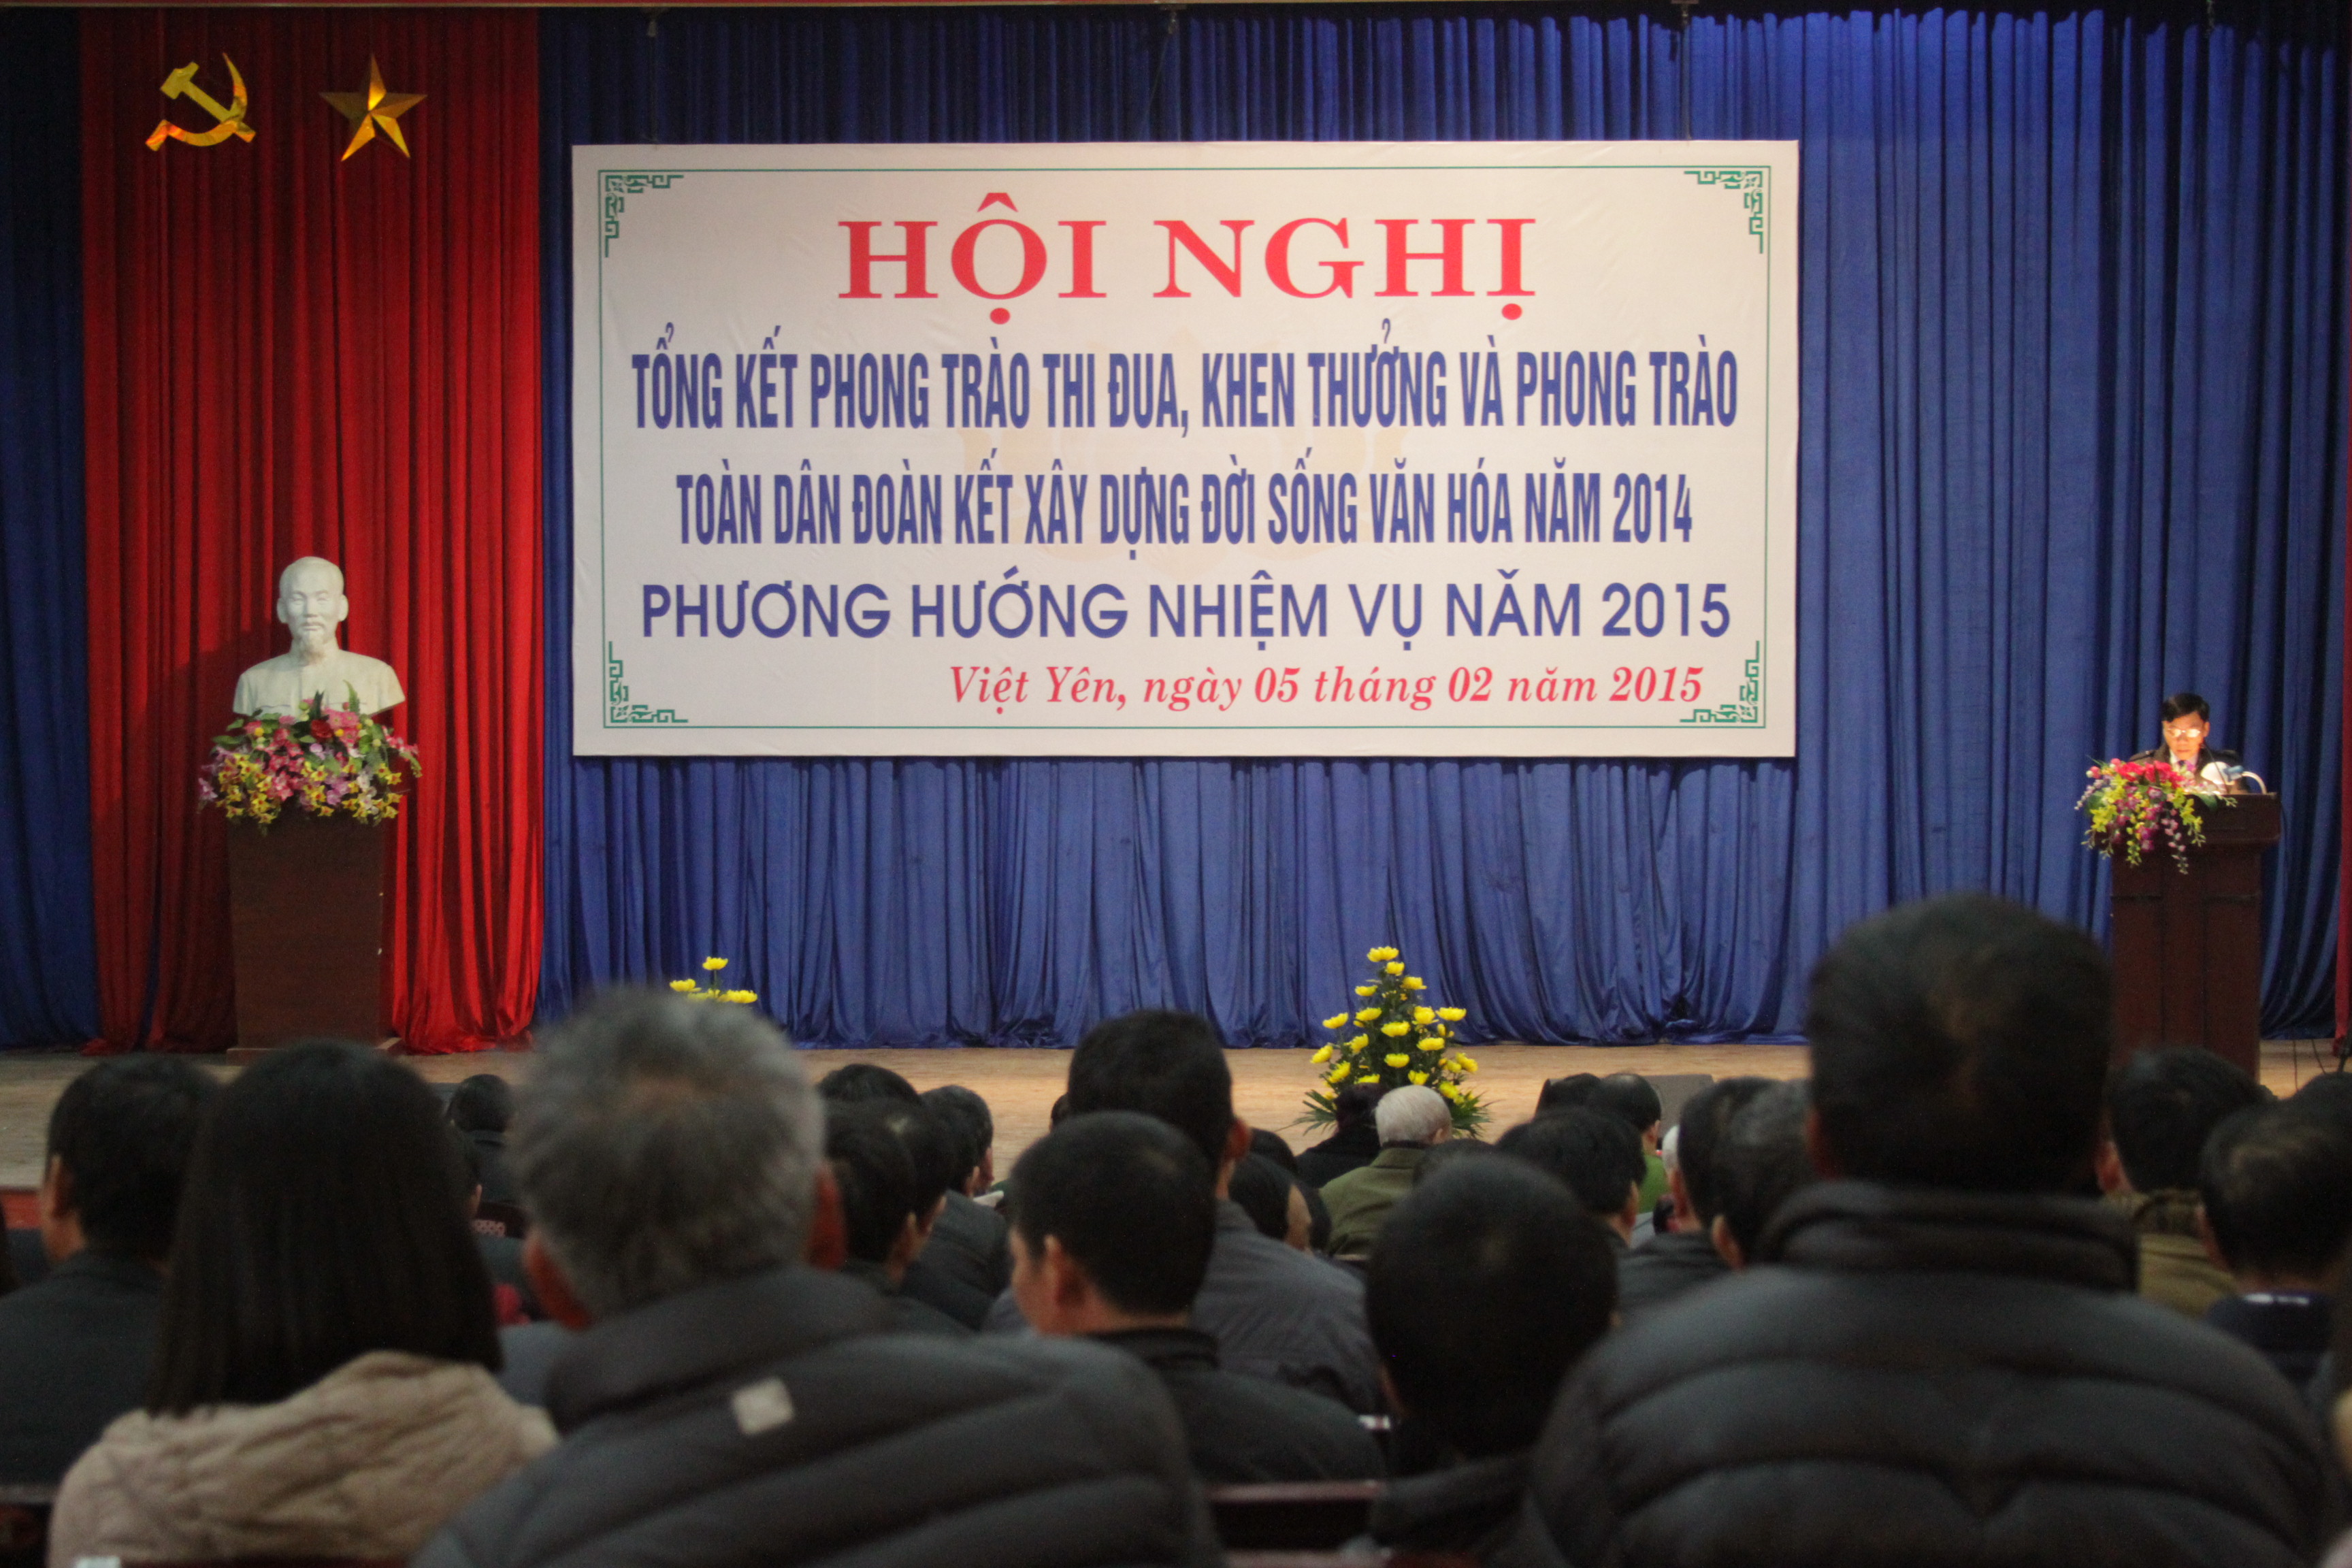 UBND huyện Việt Yên tổ chức Hội nghị tổng kết phong trào thi đua khen thưởng, phong trào toàn dân...